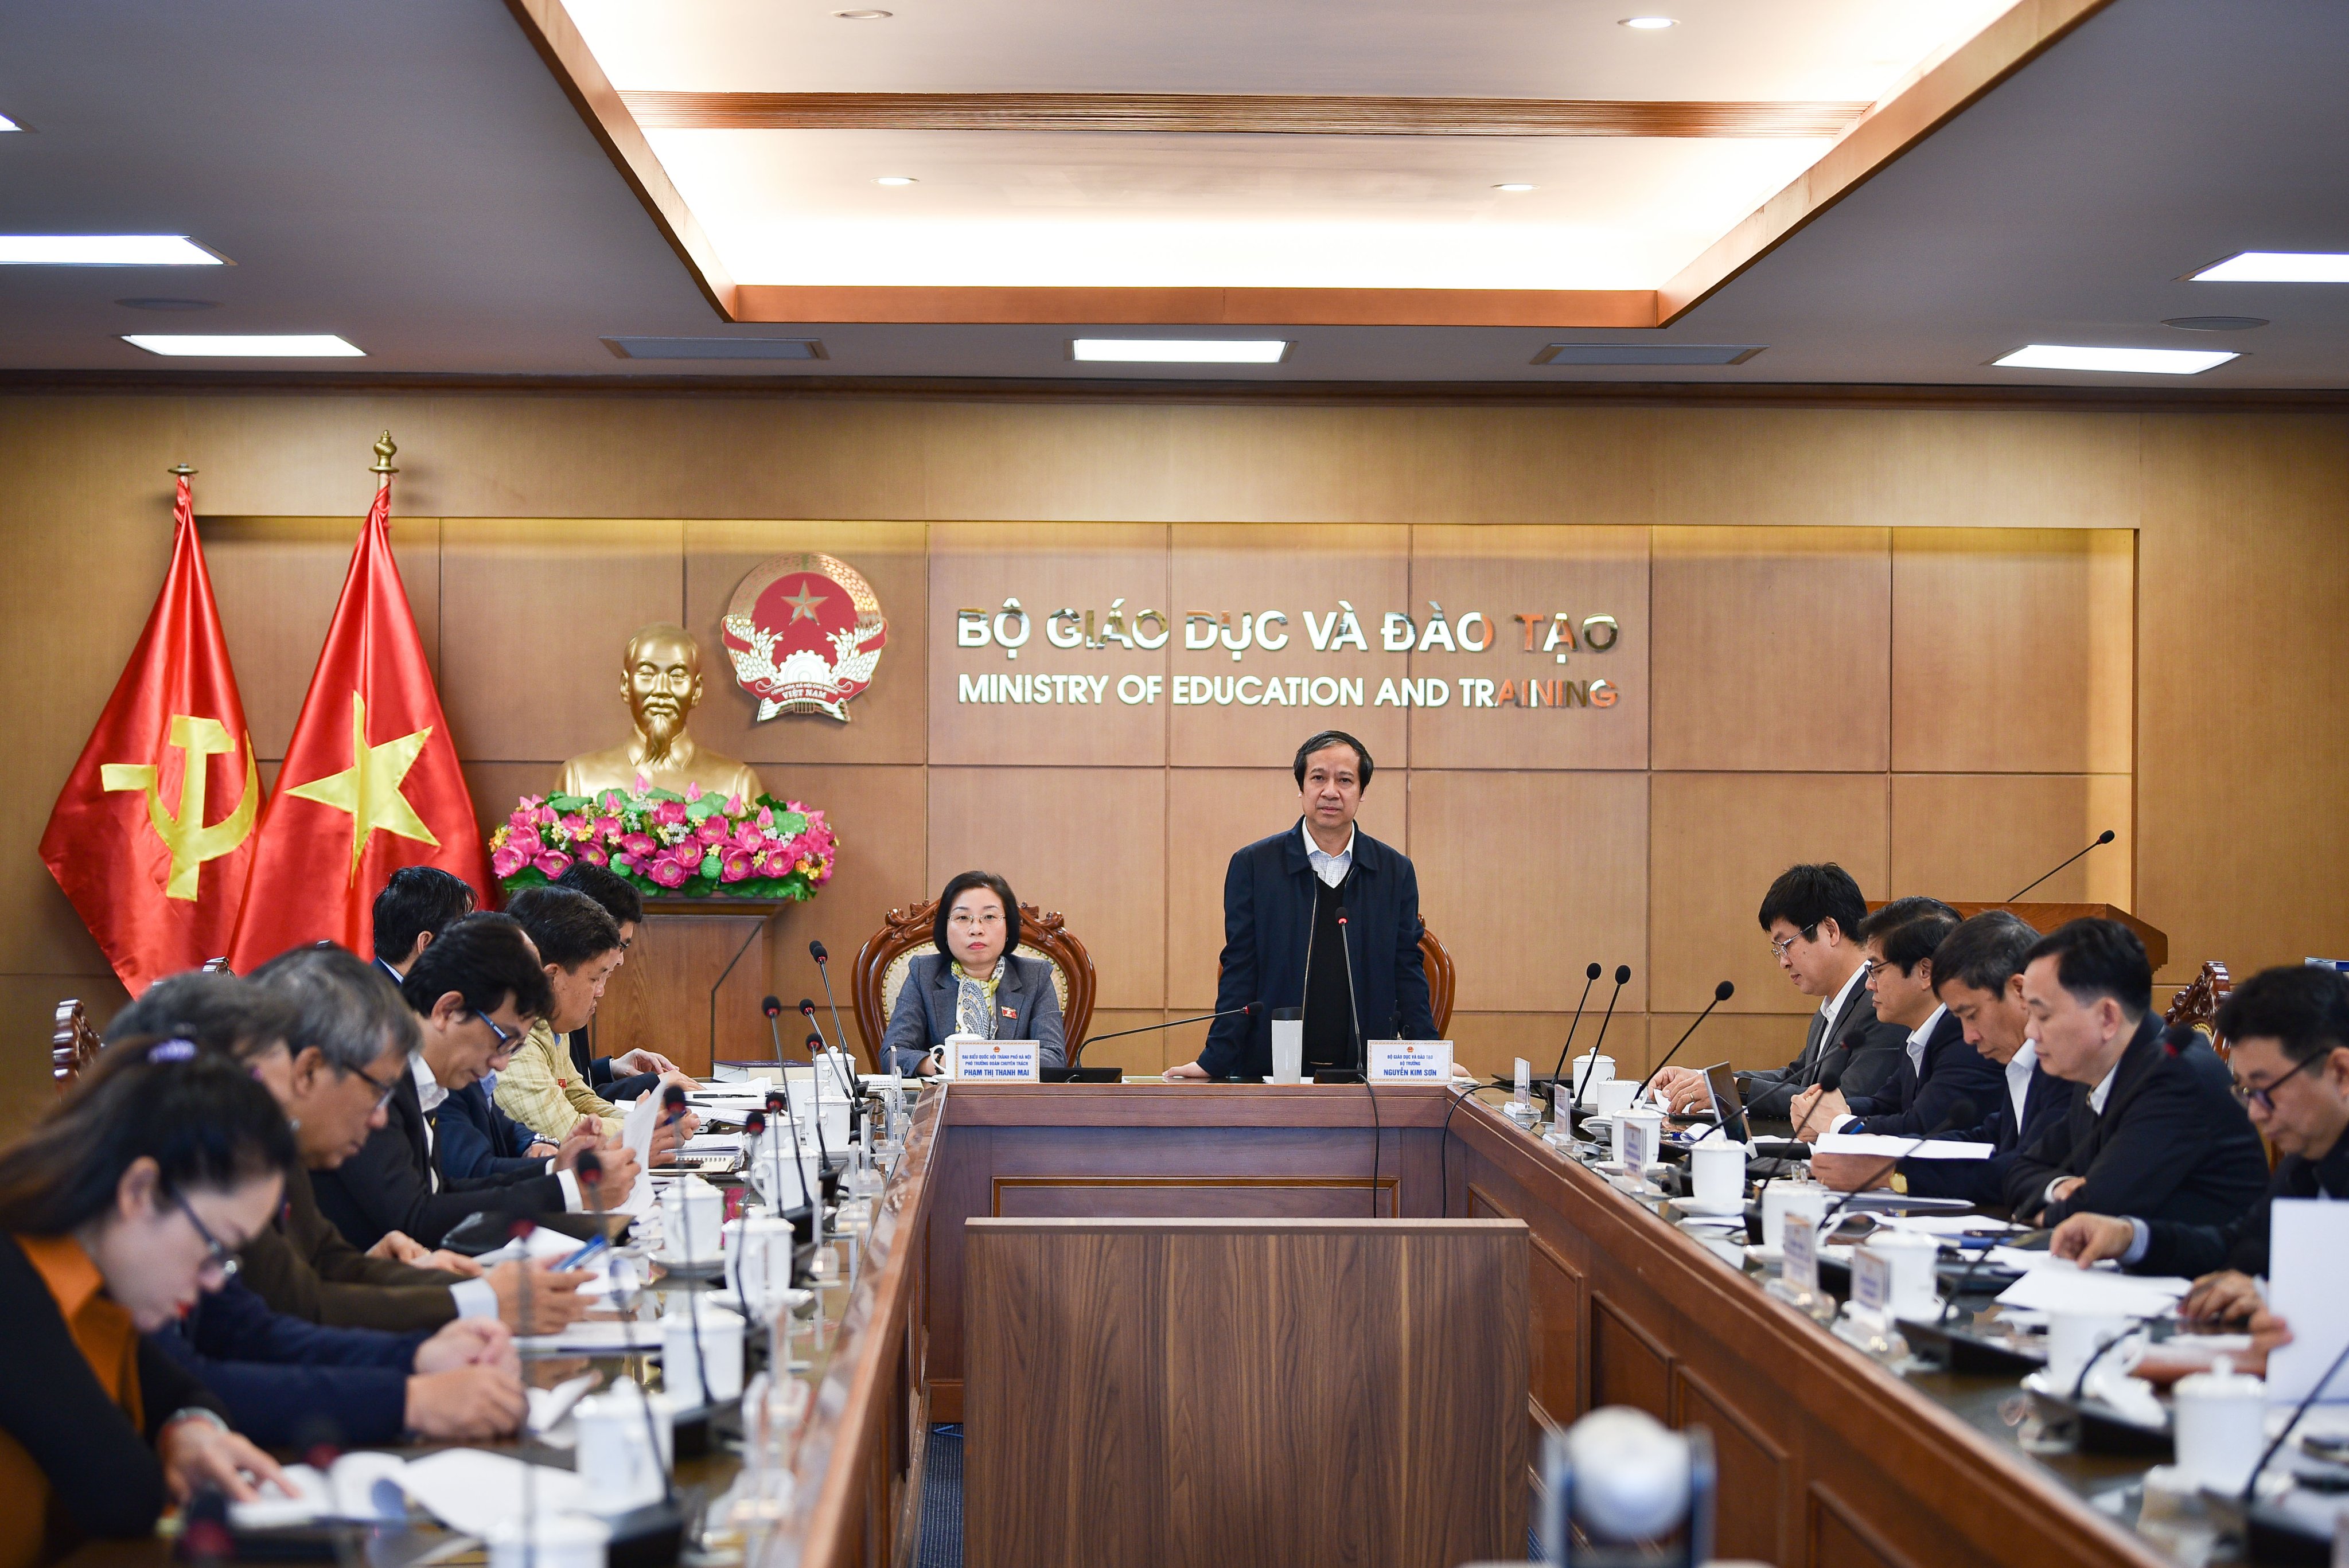 Bộ trưởng Bộ GD&ĐT Nguyễn Kim Sơn và Phó Trưởng Đoàn ĐBQH chuyên trách thành phố Hà Nội Phạm Thị Thanh Mai chủ trì buổi làm việc.